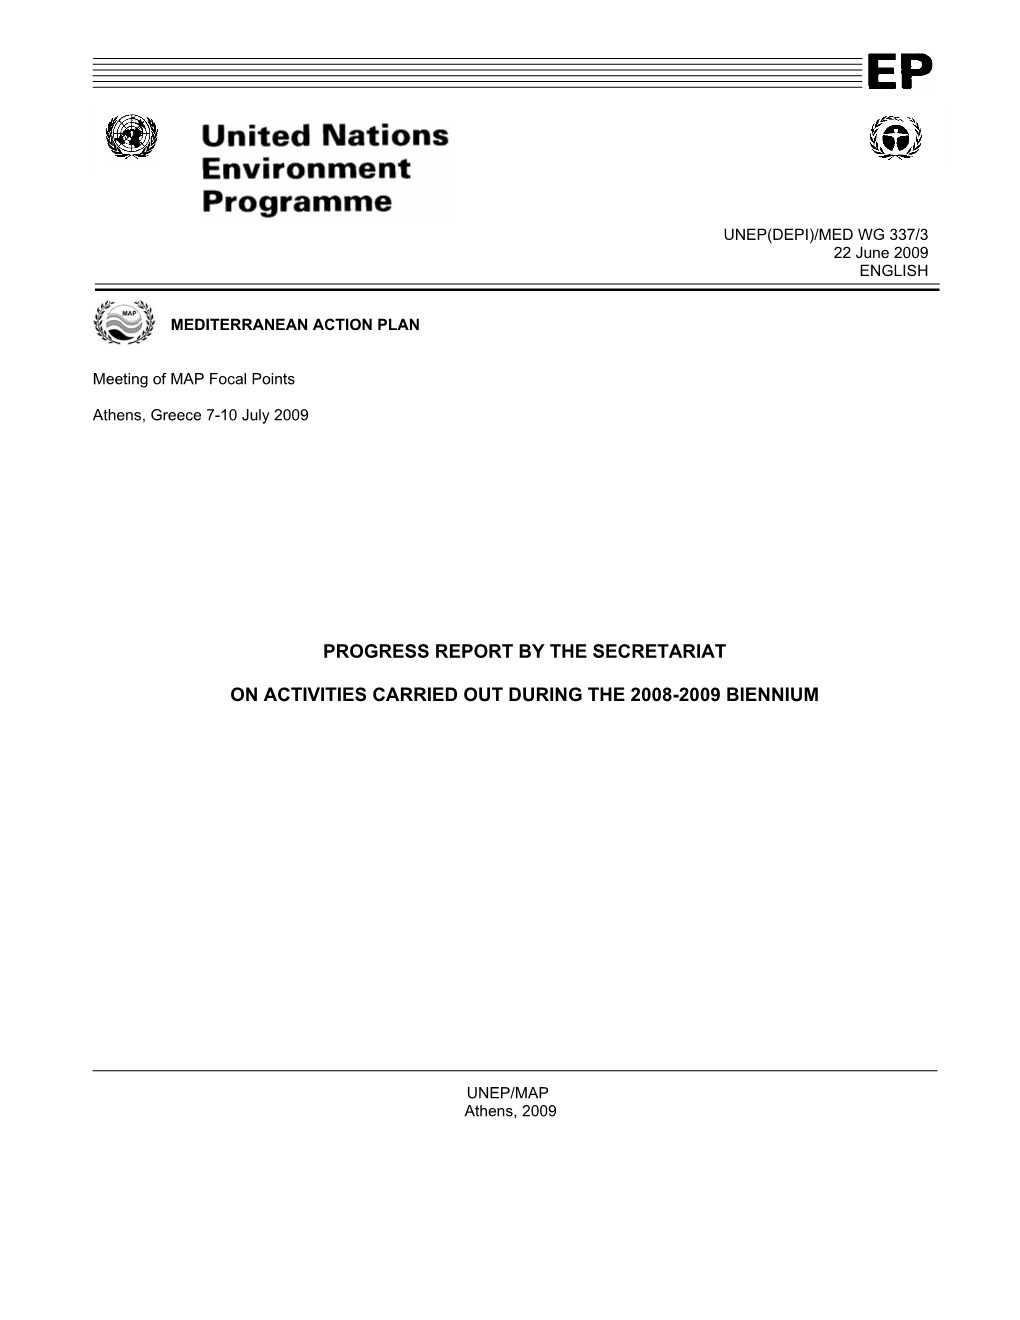 Progress Report by the Secretariat on Activities